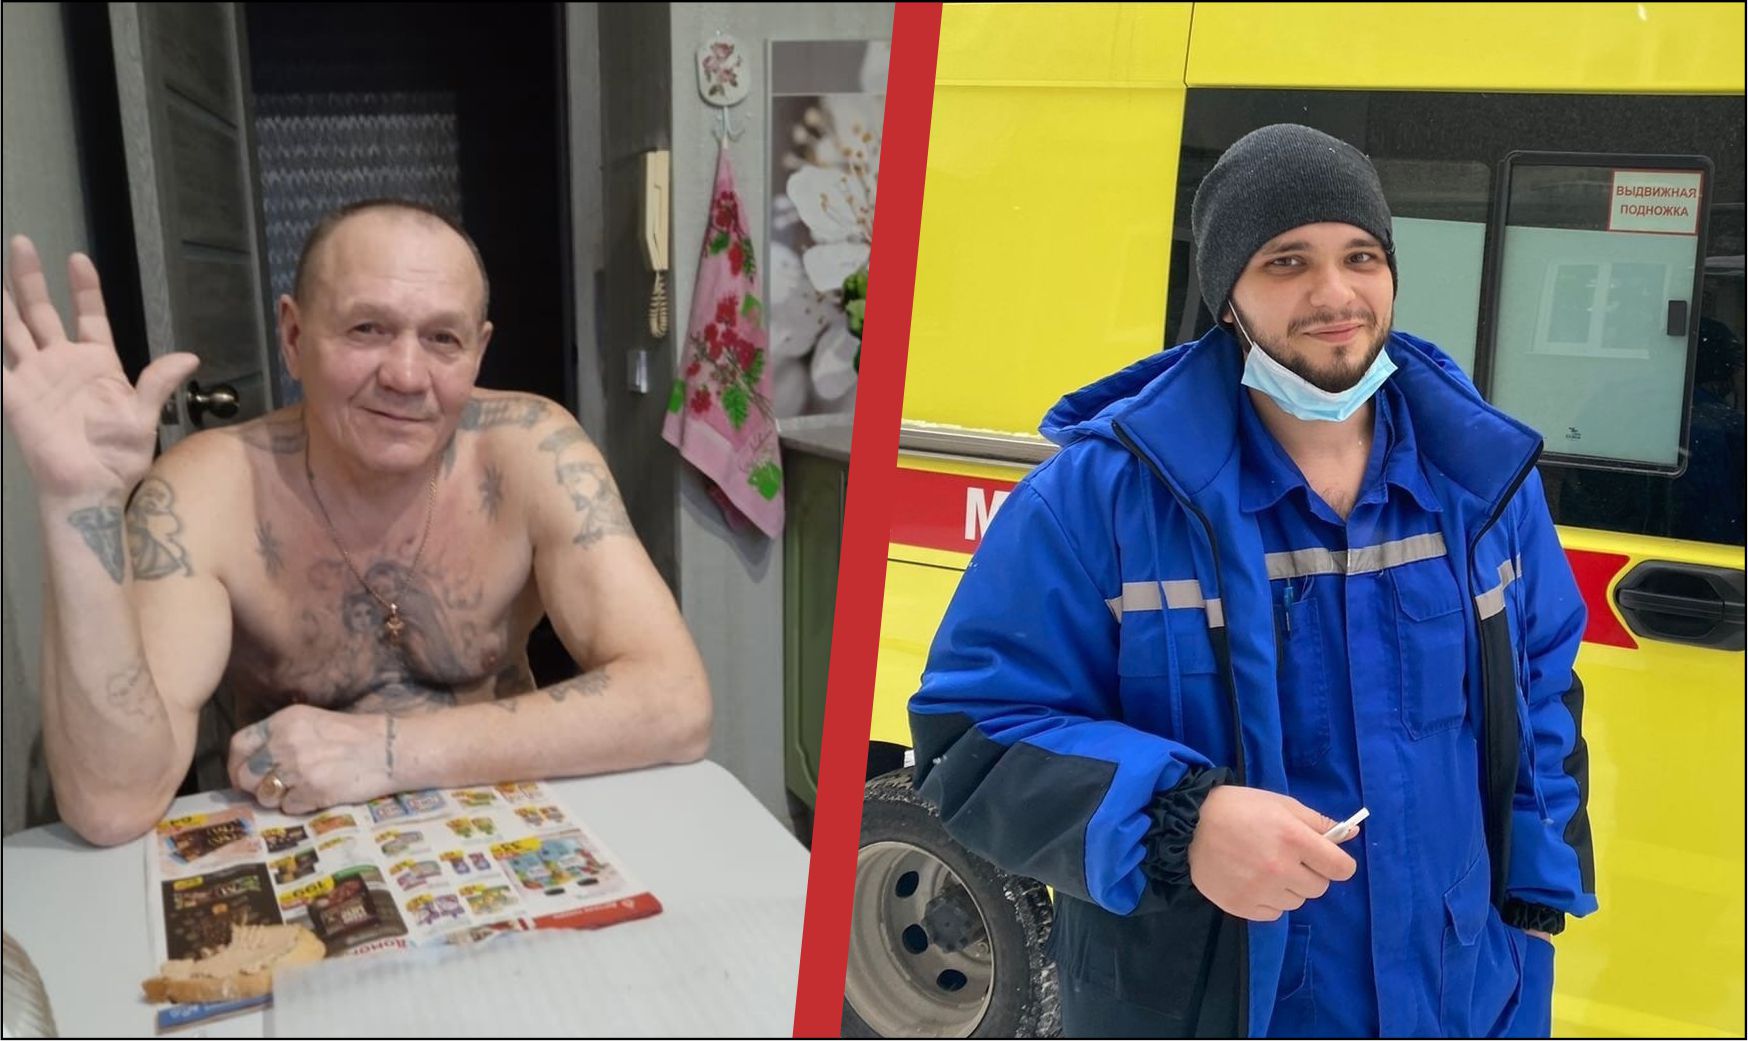 Геннадий Казаков (слева), обвиняемый в убийстве из хулиганских побуждений медбрата Степана Шабурова (справа) / Фото со страниц в соцсетях